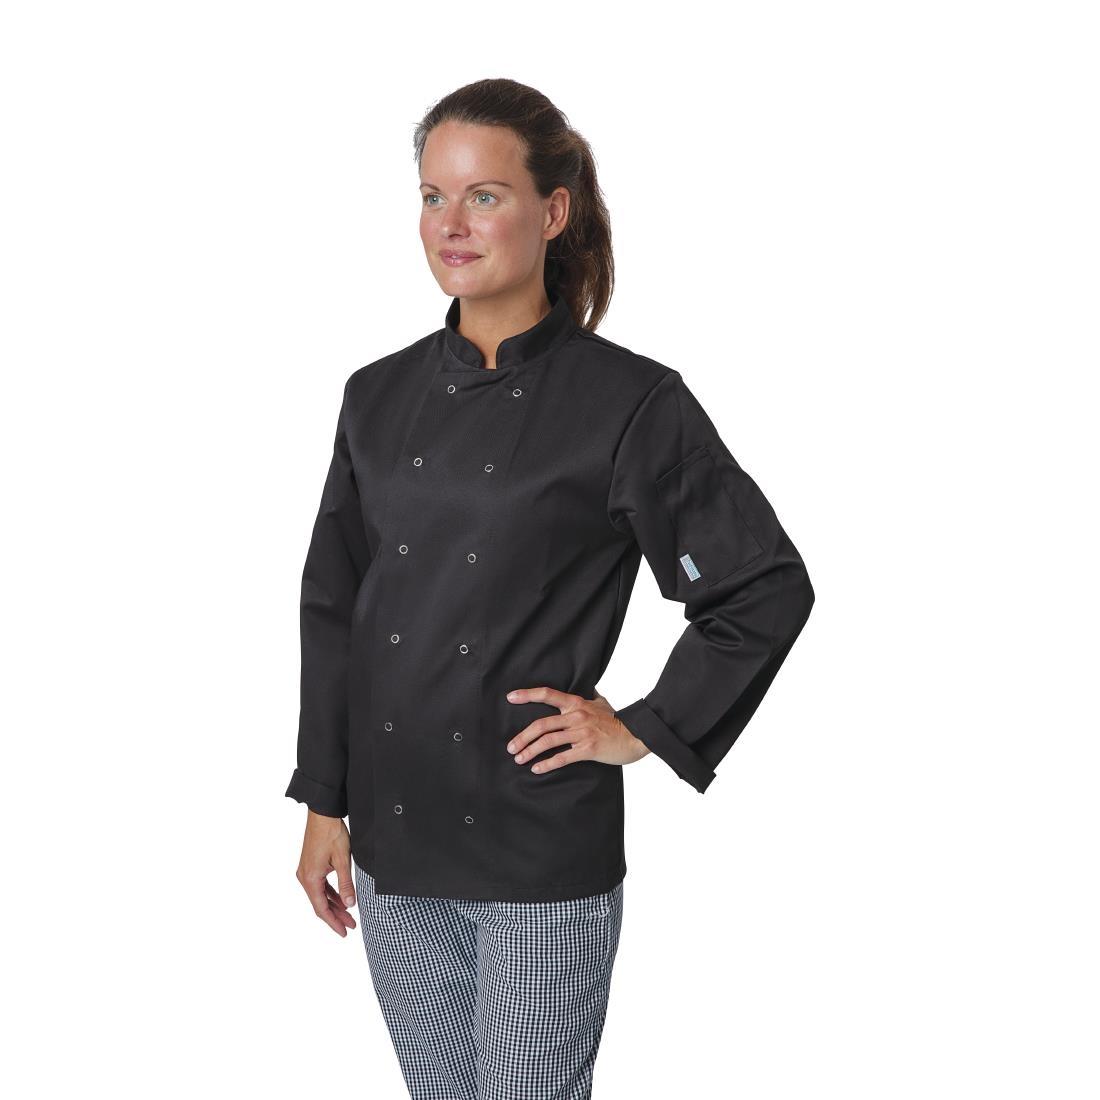 Whites Vegas Unisex Chefs Jacket Long Sleeve Black 5XL - A438-5XL  - 2